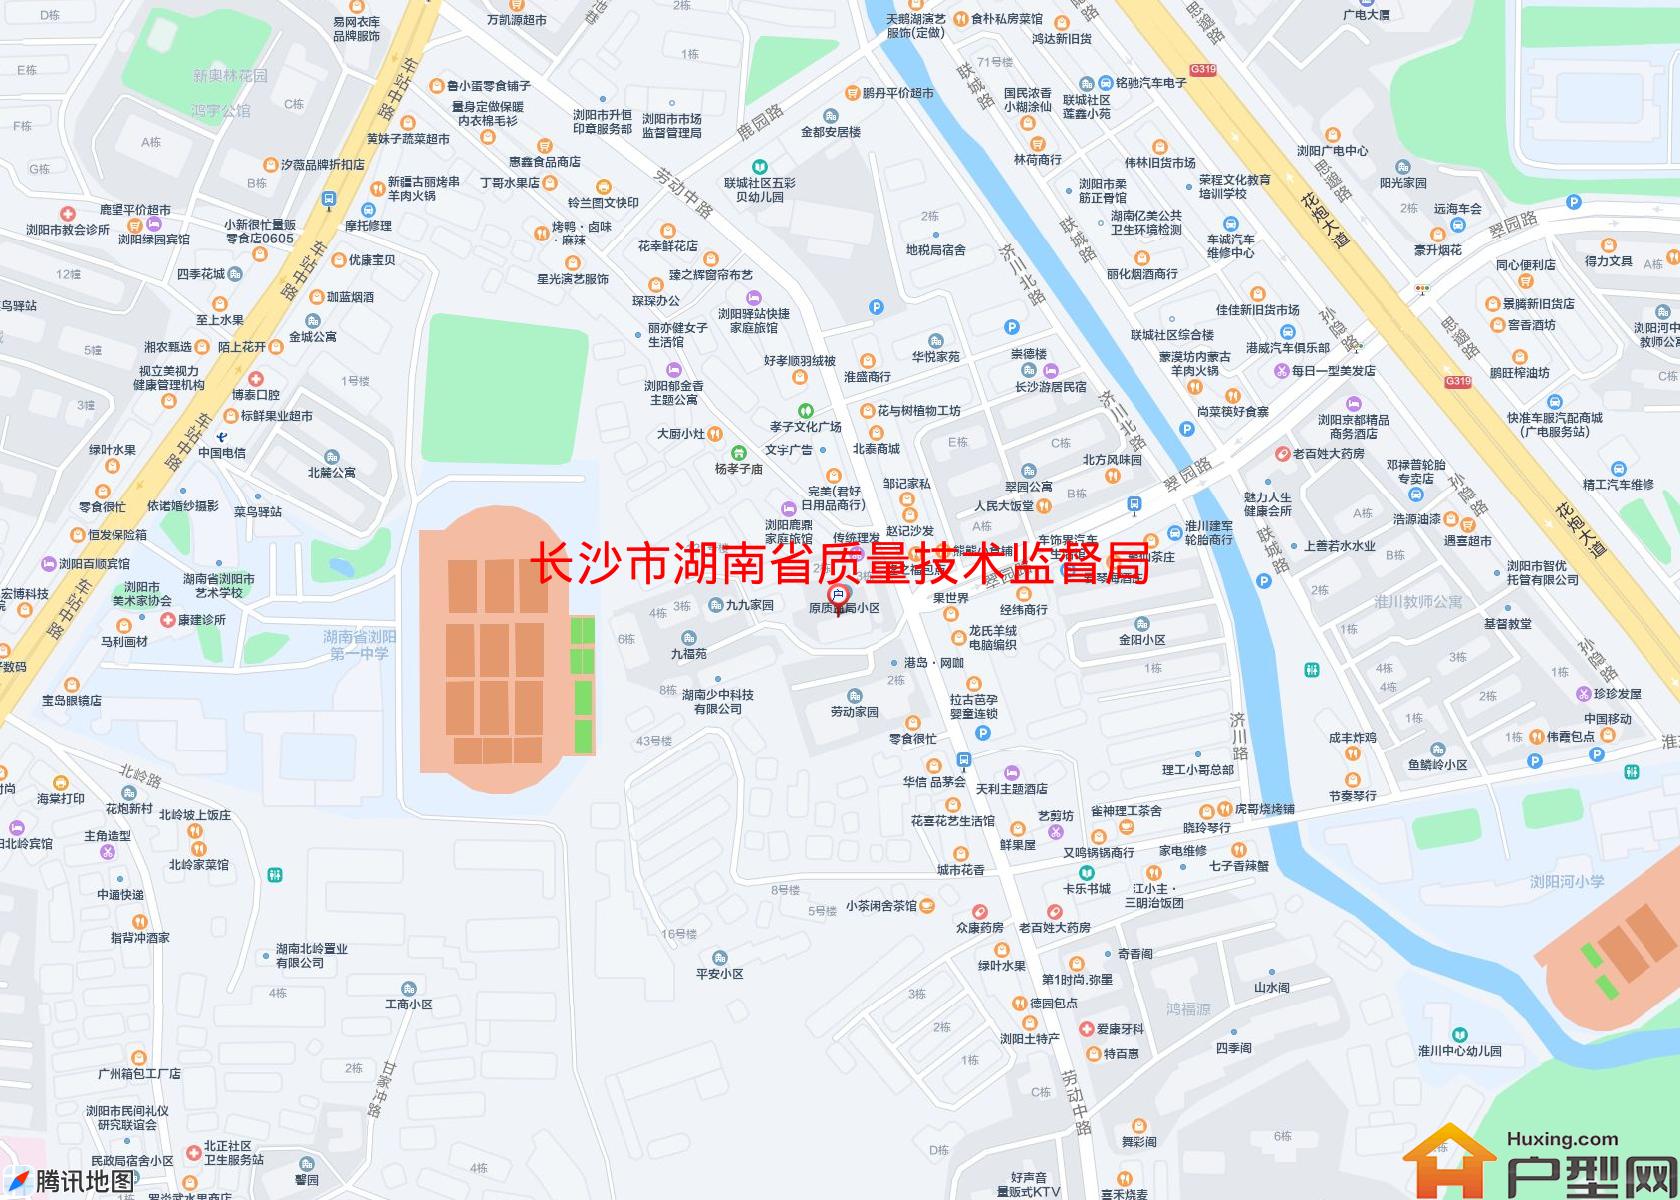 湖南省质量技术监督局宿舍小区 - 户型网